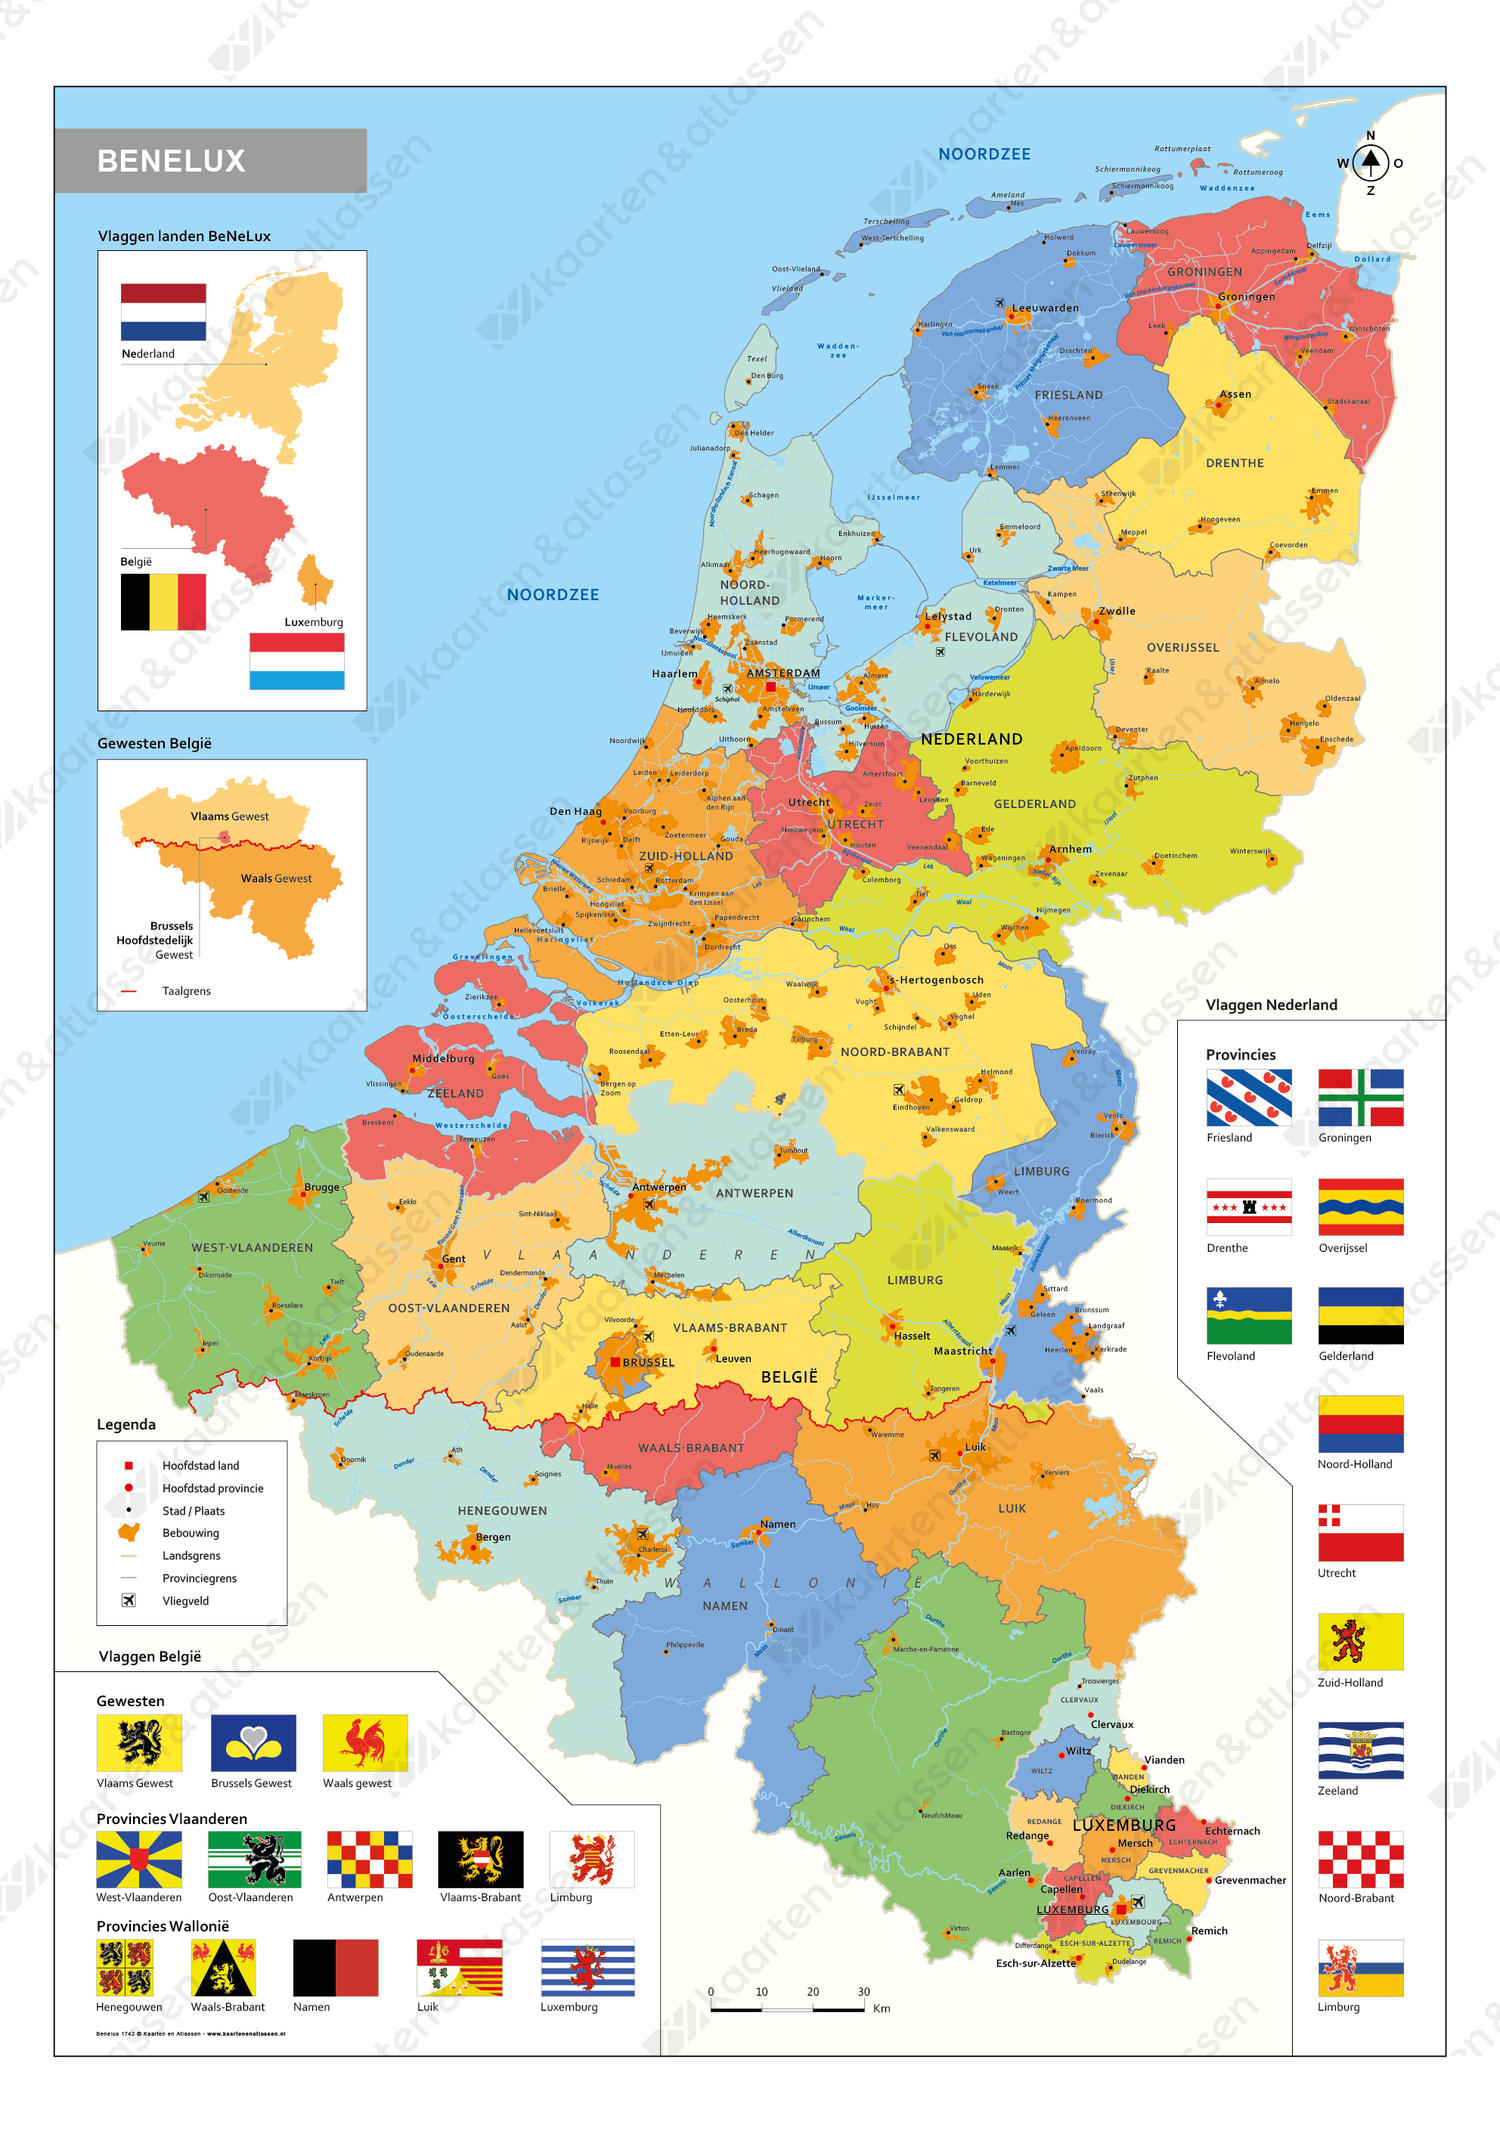 Digitale schoolkaart Benelux